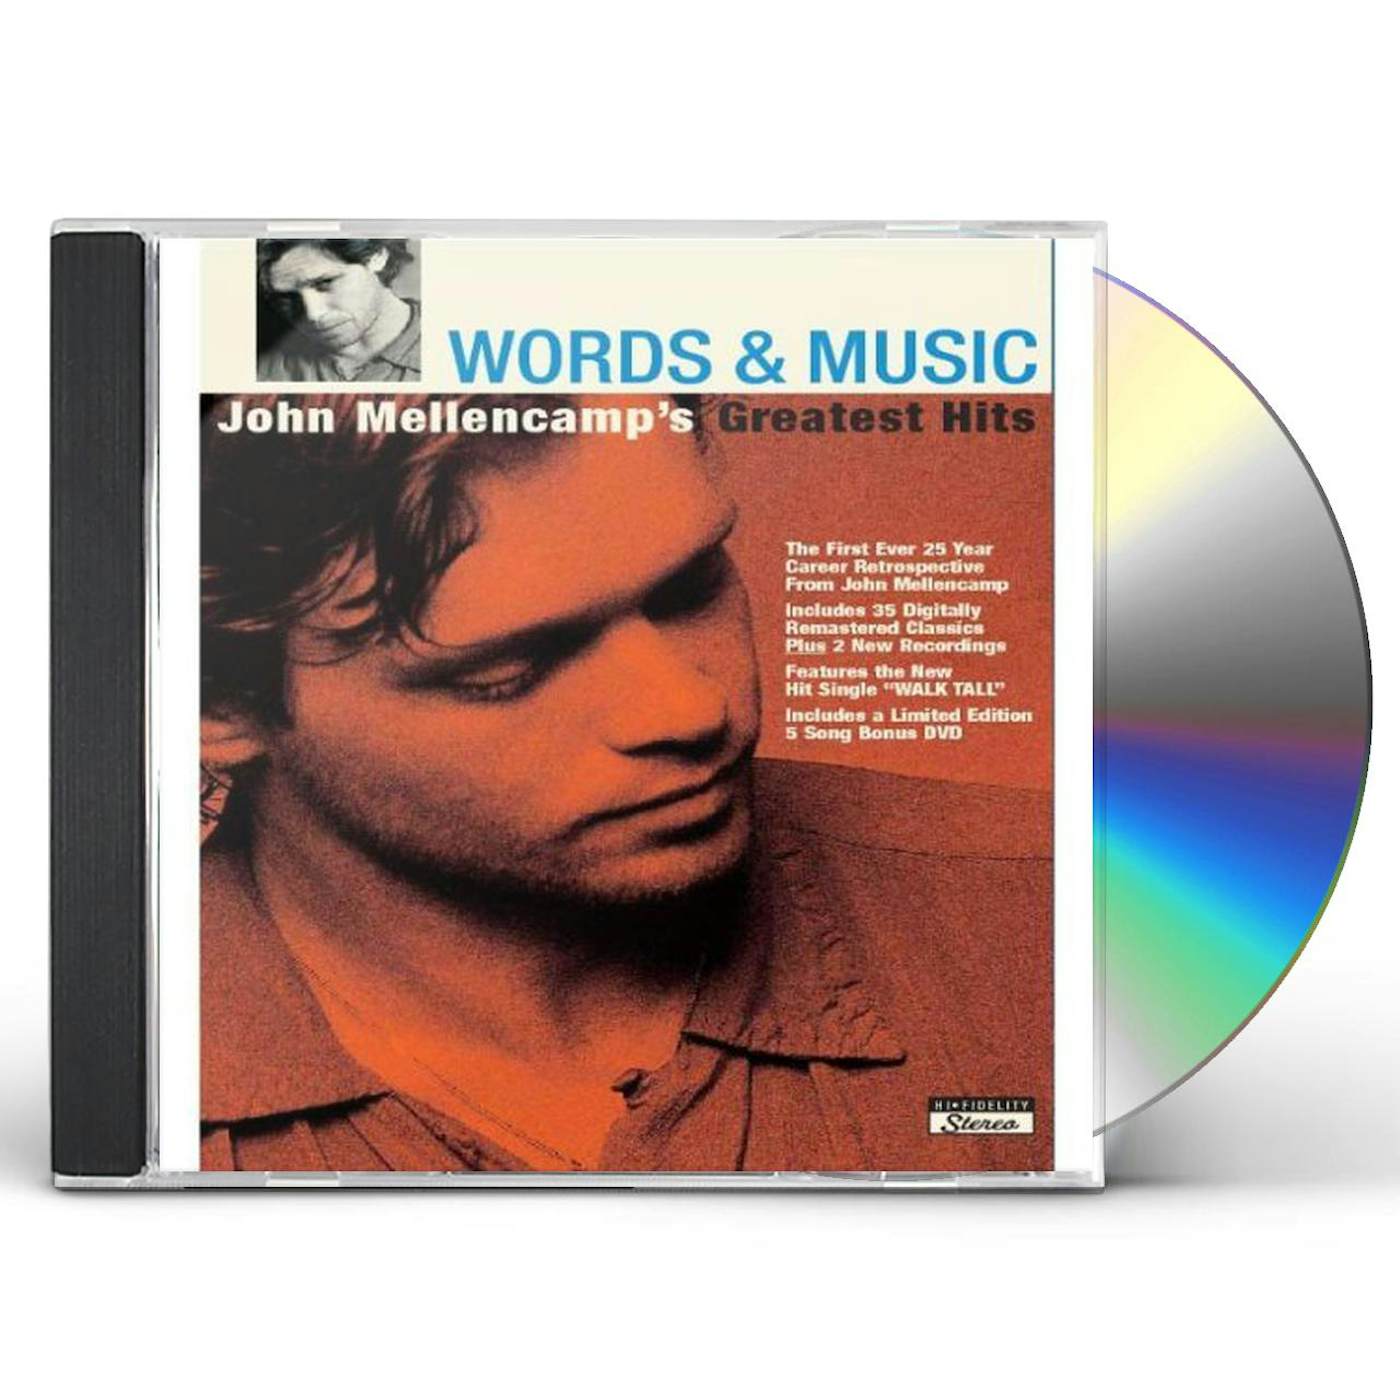 WORDS & MUSIC: JOHN MELLENCAMP'S GREATEST HITS CD